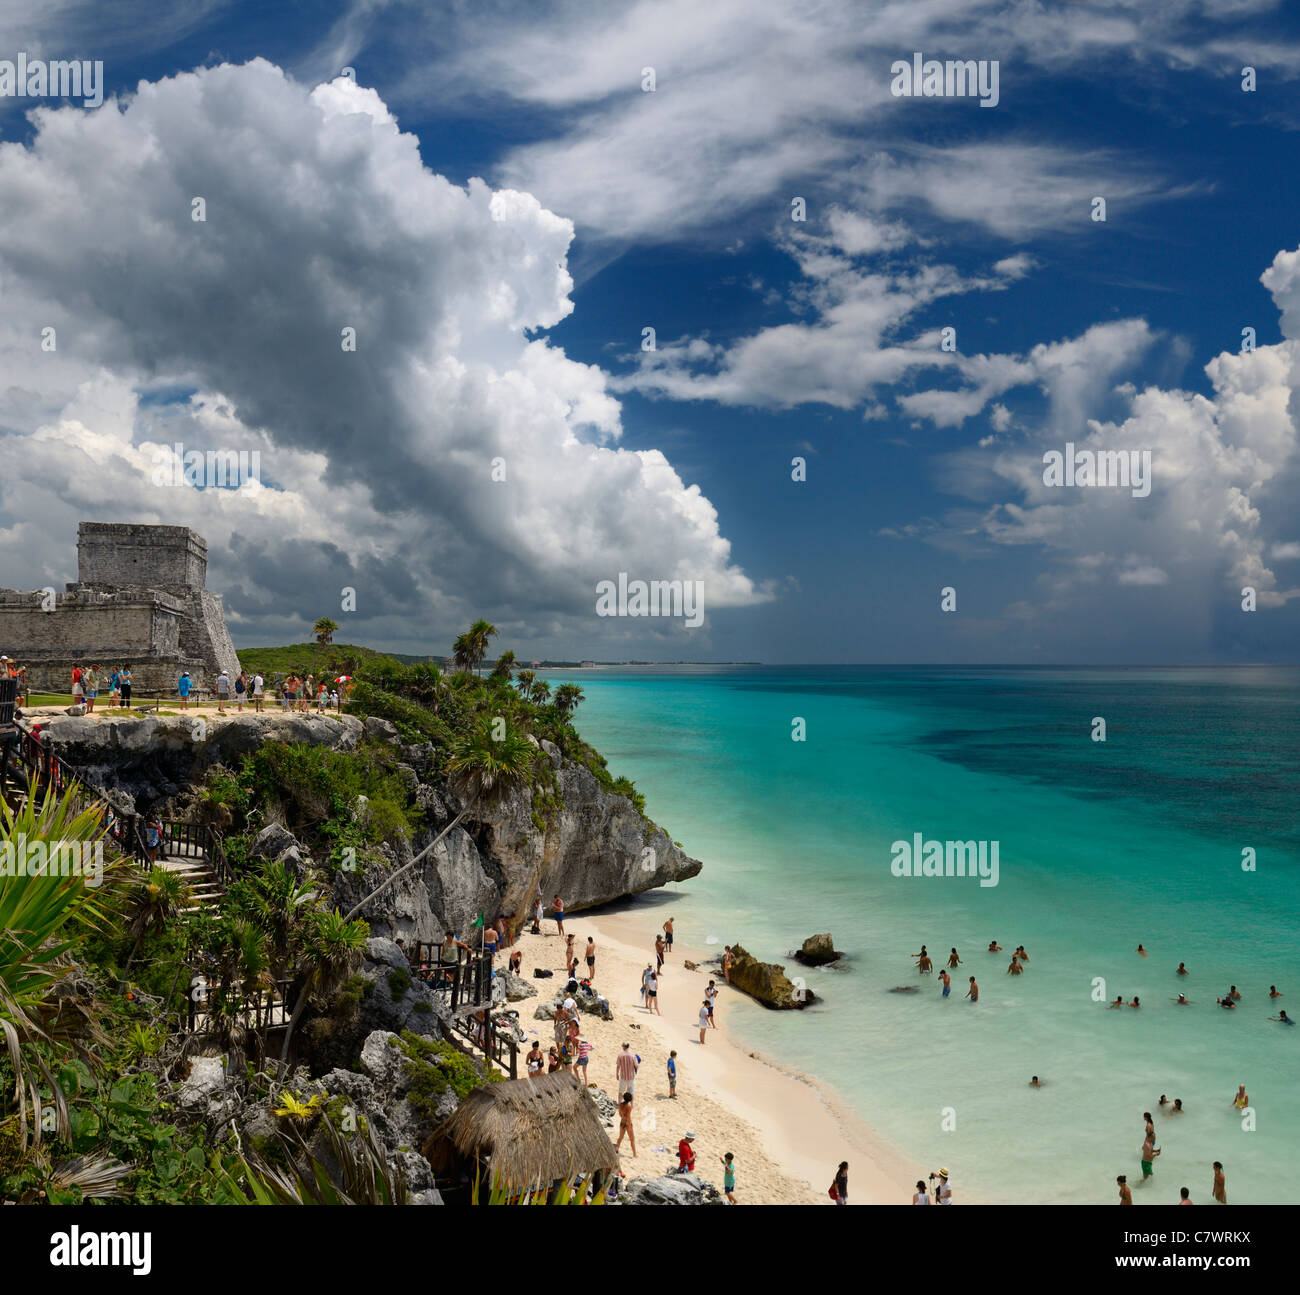 Das Schloss Pyramide in Tulum Mexiko mit Meer Felsen und Sand Beach Einlass Ruine mit swimers Riviera Maya Halbinsel Yucatan Karibik Stockfoto